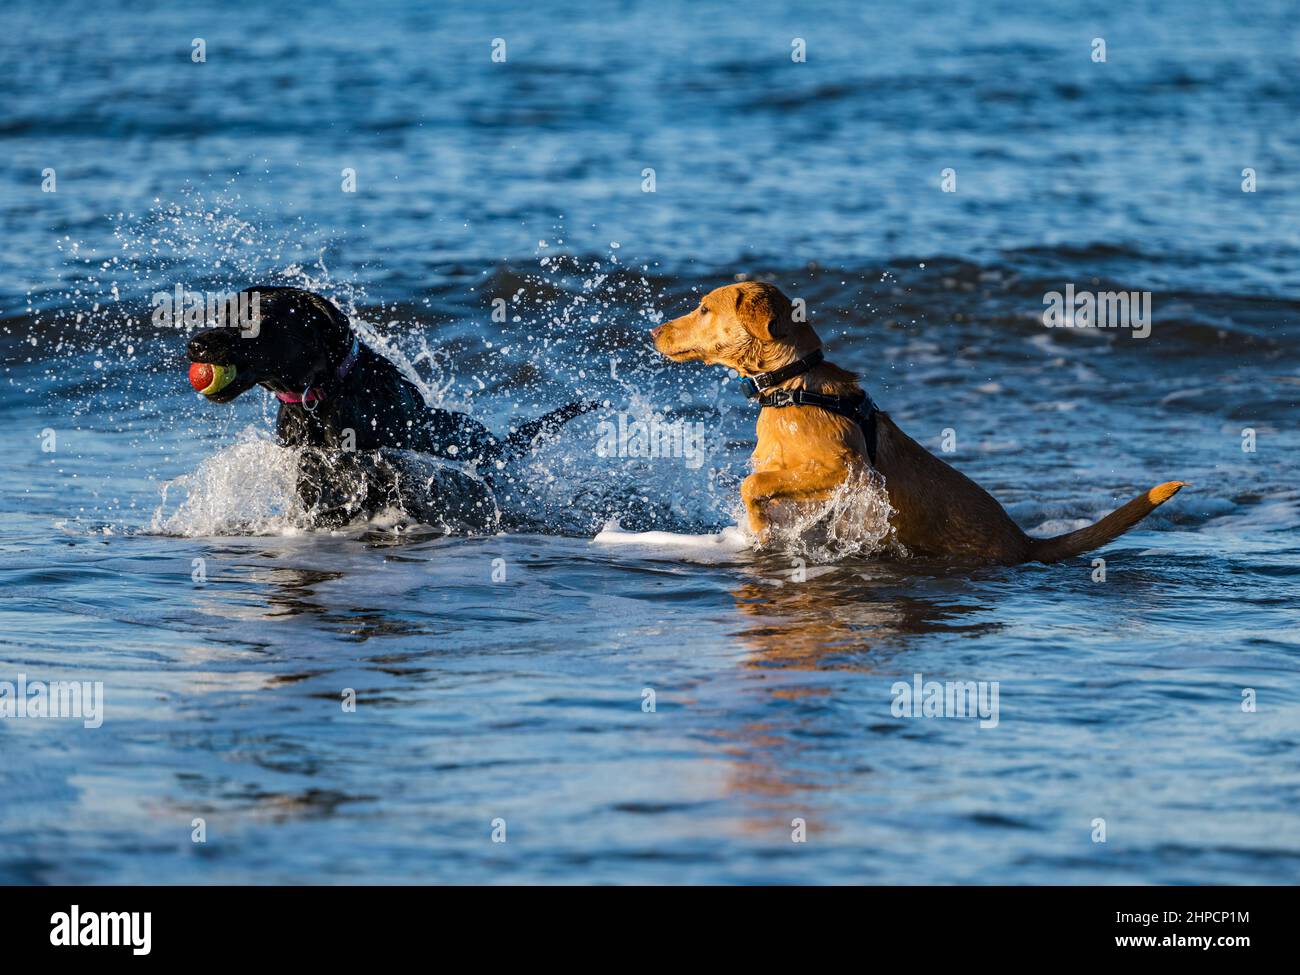 Le chien noir et le chien doré du Labrador et le chiot se chassent les uns les autres avec un ballon dans l'eau de mer le jour ensoleillé, Écosse, Royaume-Uni Banque D'Images